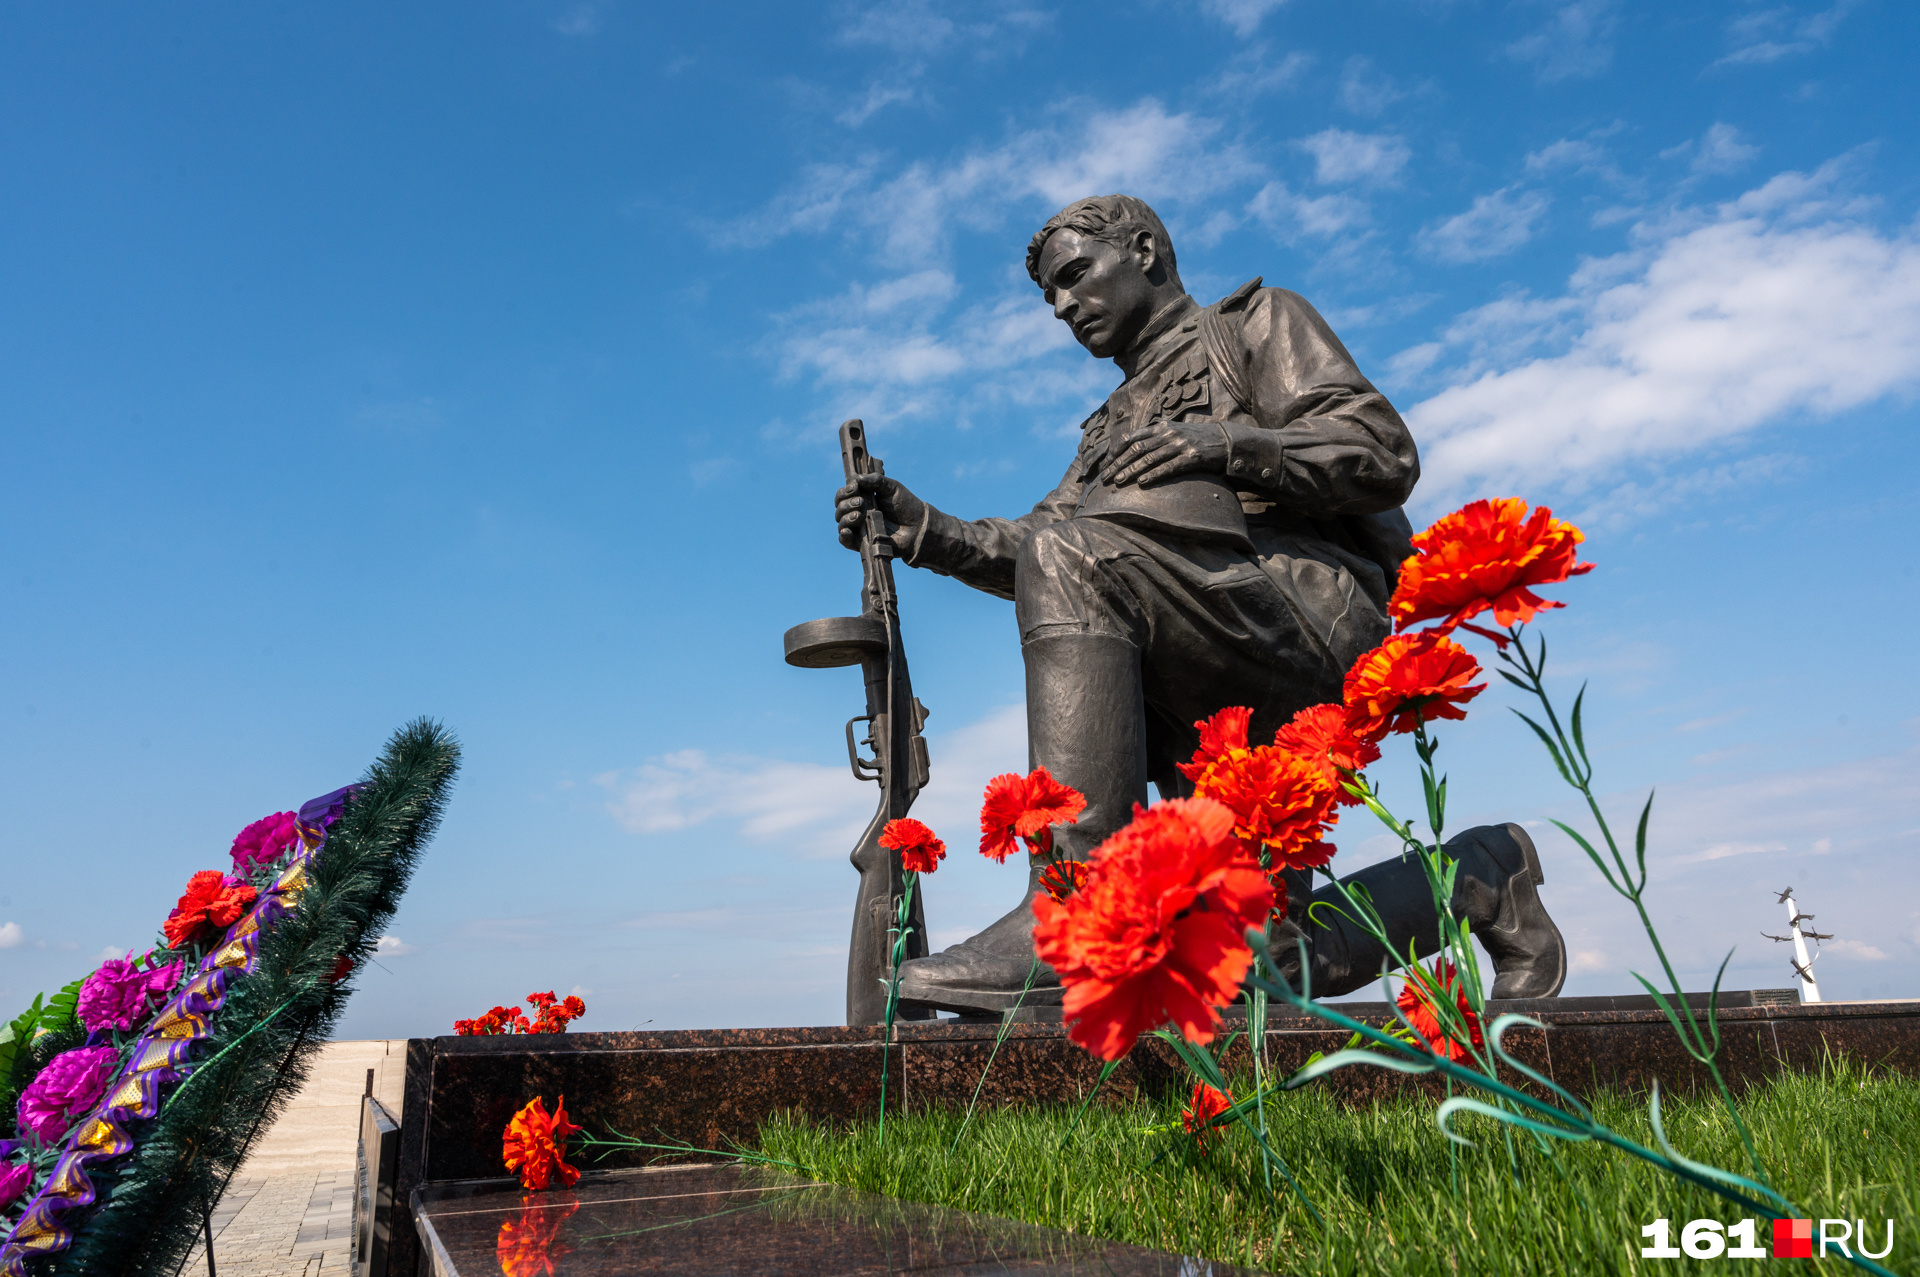 Аллея памяти завершается скульптурой «Памятник советскому солдату — победителю». Ее высота с учетом подиума составляет <nobr class="_">3,5 метра</nobr>